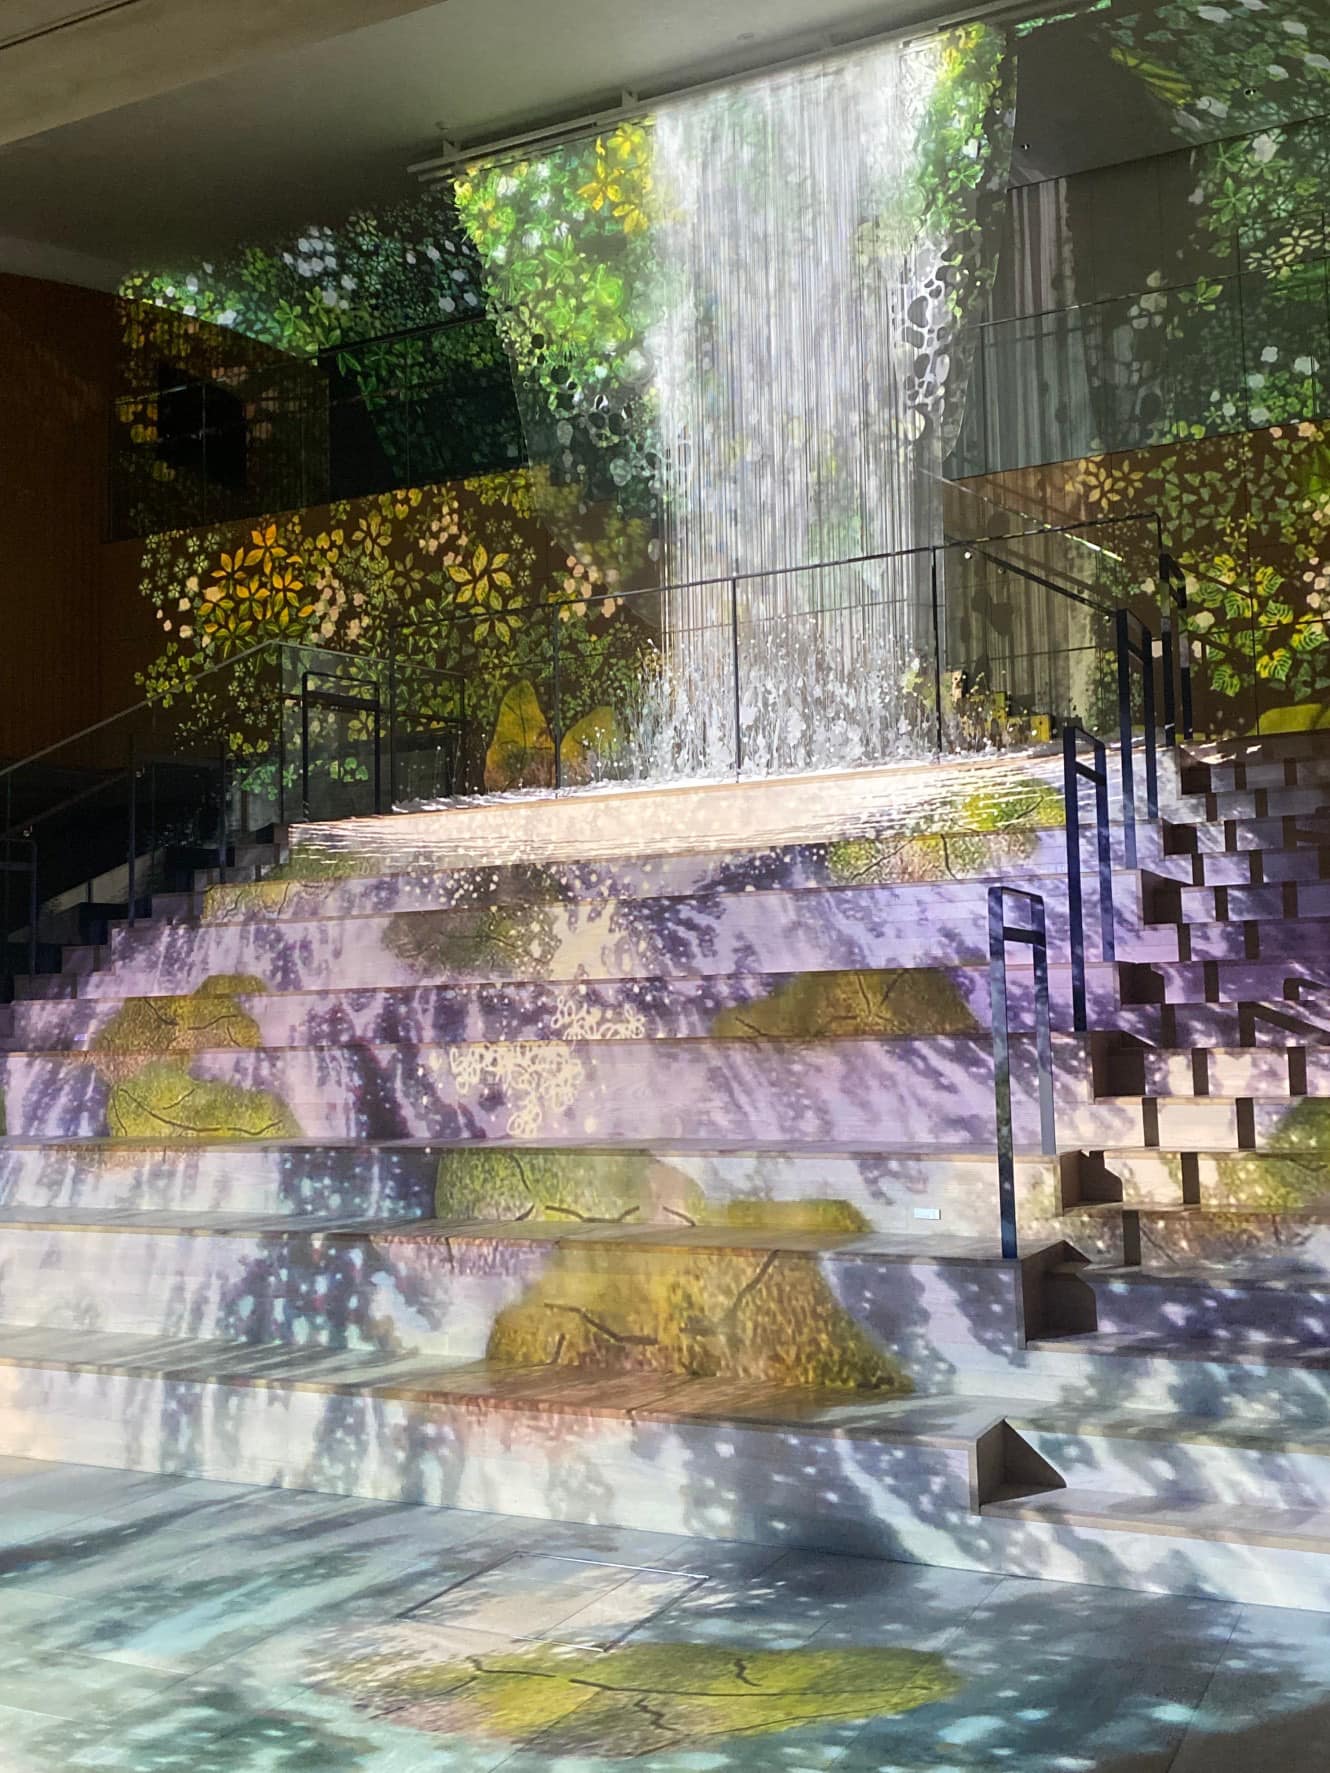 そして、一番の見せ場になる、滝のシーン。 照喜名さんの滝オブジェと、 大成建設さんが作られた、この空間デザインとの、 コラボレーションで生まれた、景色です✨